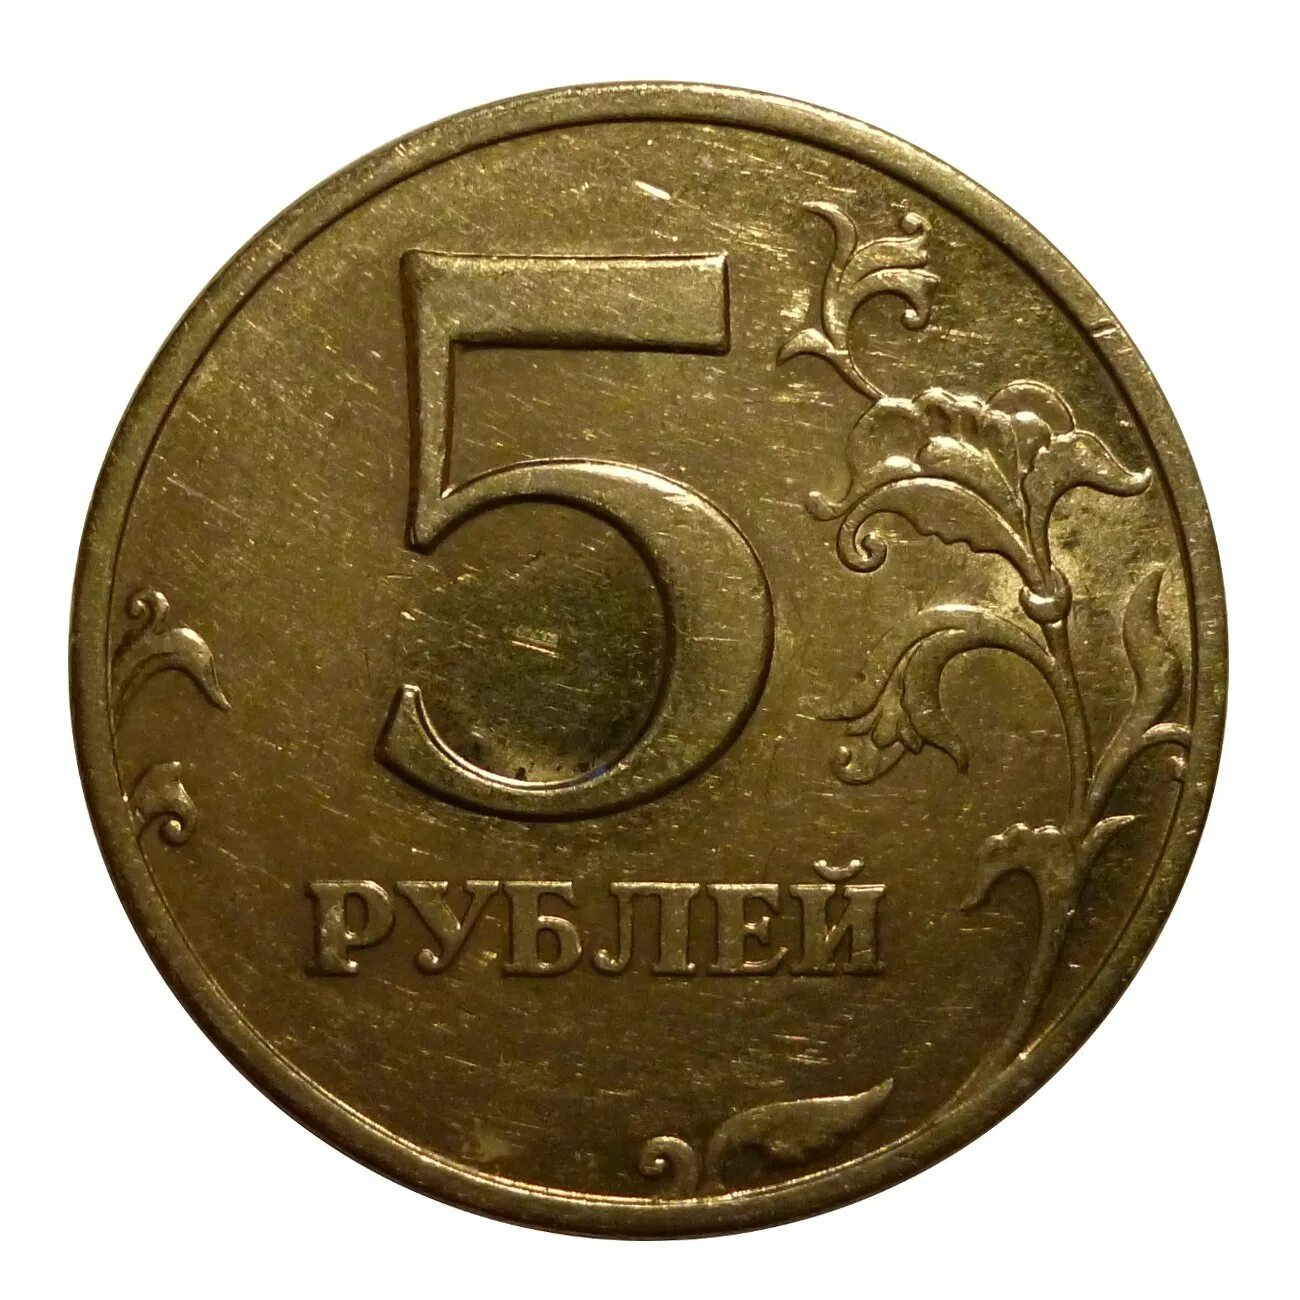 5 рублей железные. Монета 5 рублей. Монетка 5 рублей. Пять рублей монета. Монета 5 рублей для детей.